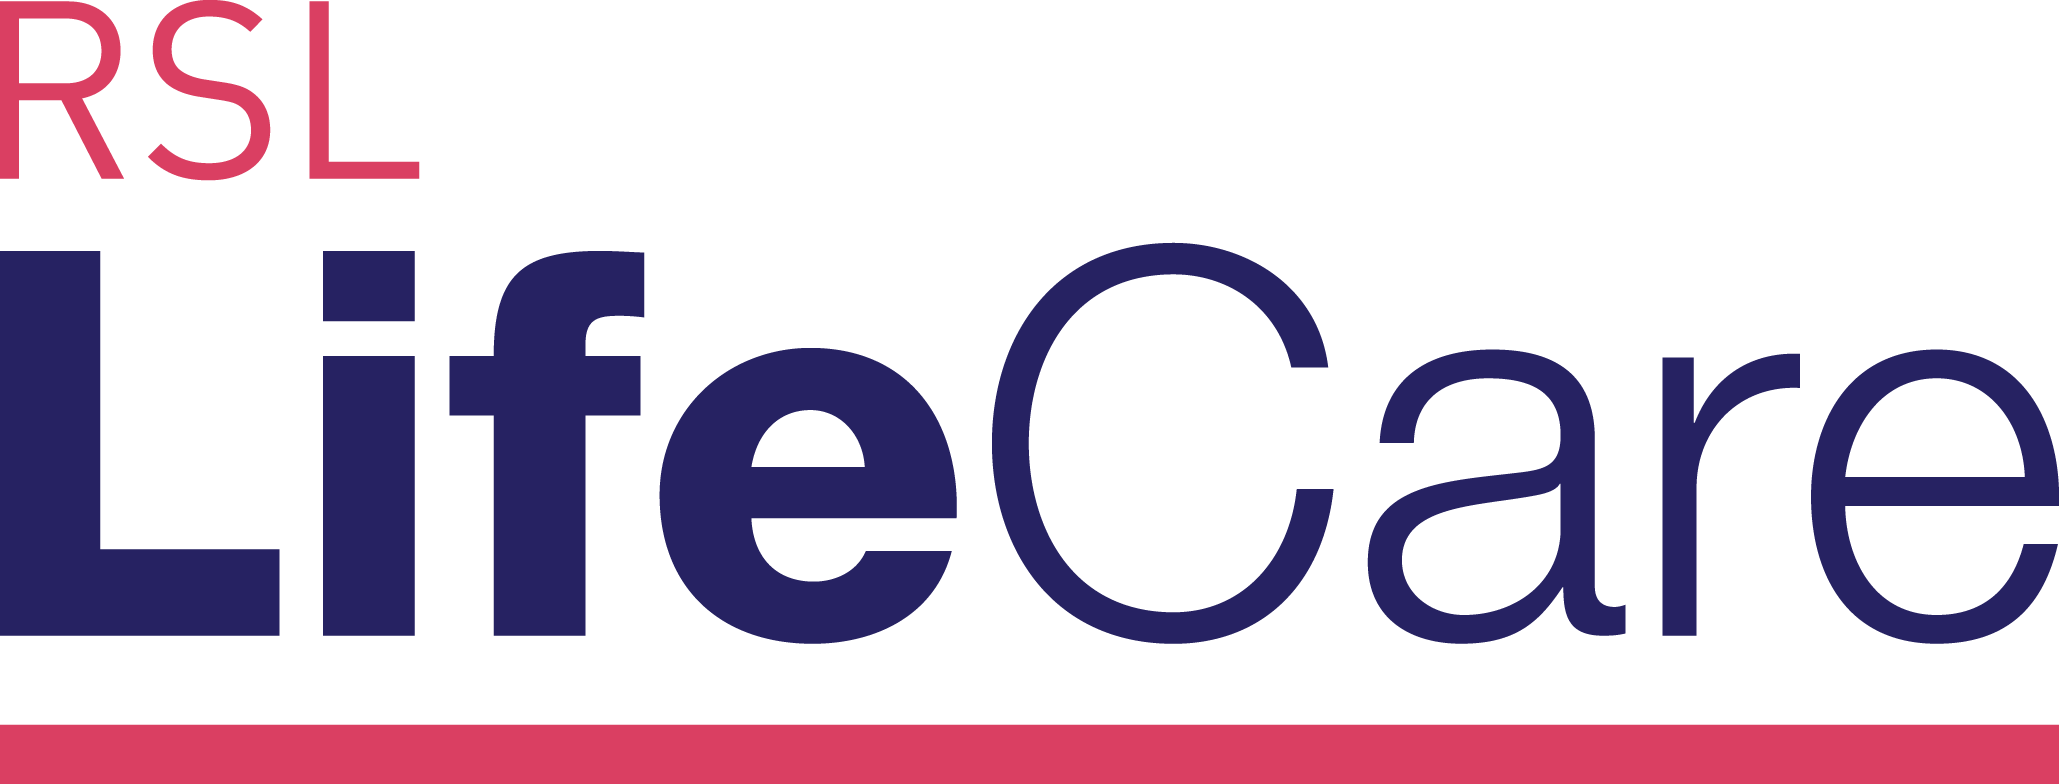 RSL LifeCare First Fleet Village logo